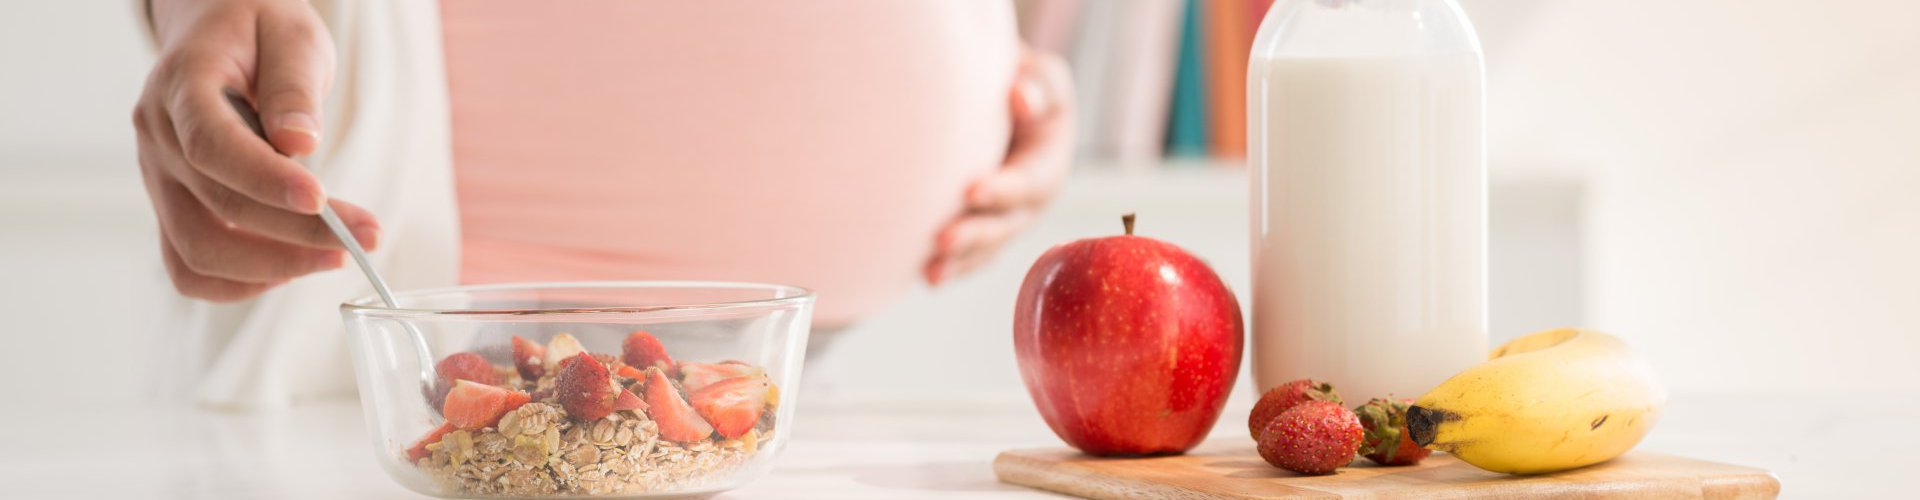 Voeding & zwangerschap